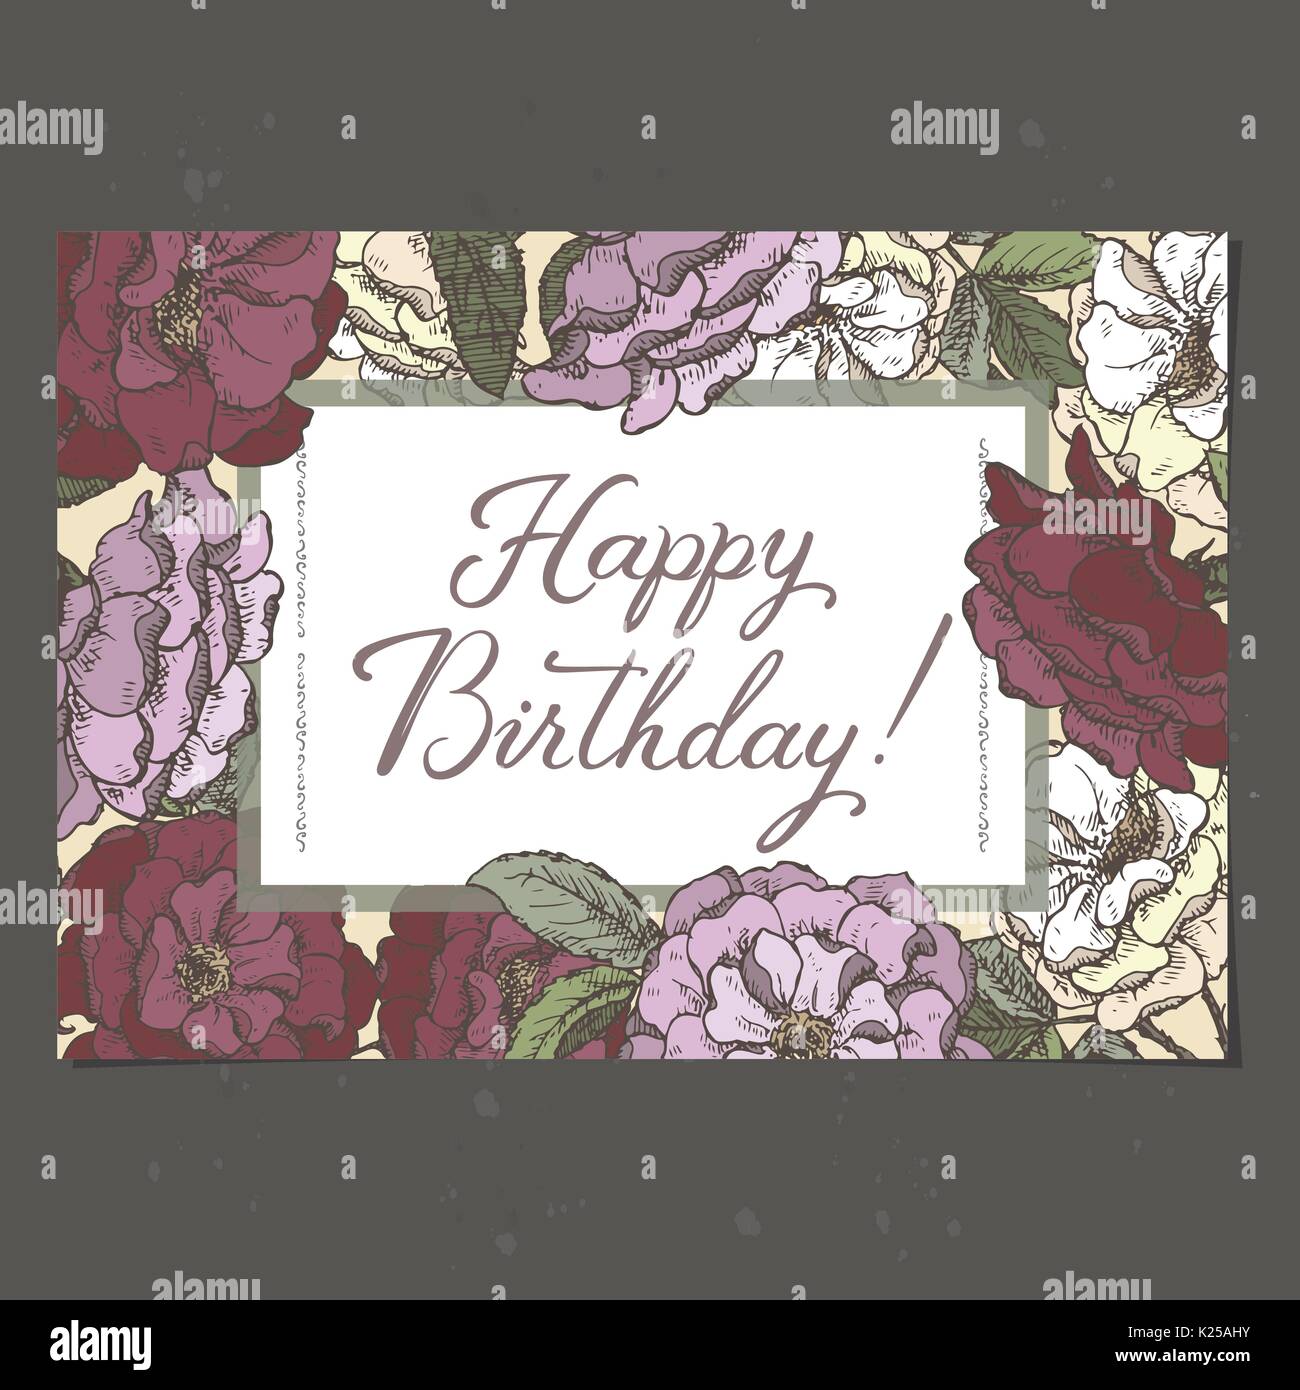 Querformat Format Romantisches Geburtstagskarte Vorlage Mit Kalligraphie Und Rosen Skizze Stock Vektorgrafik Alamy